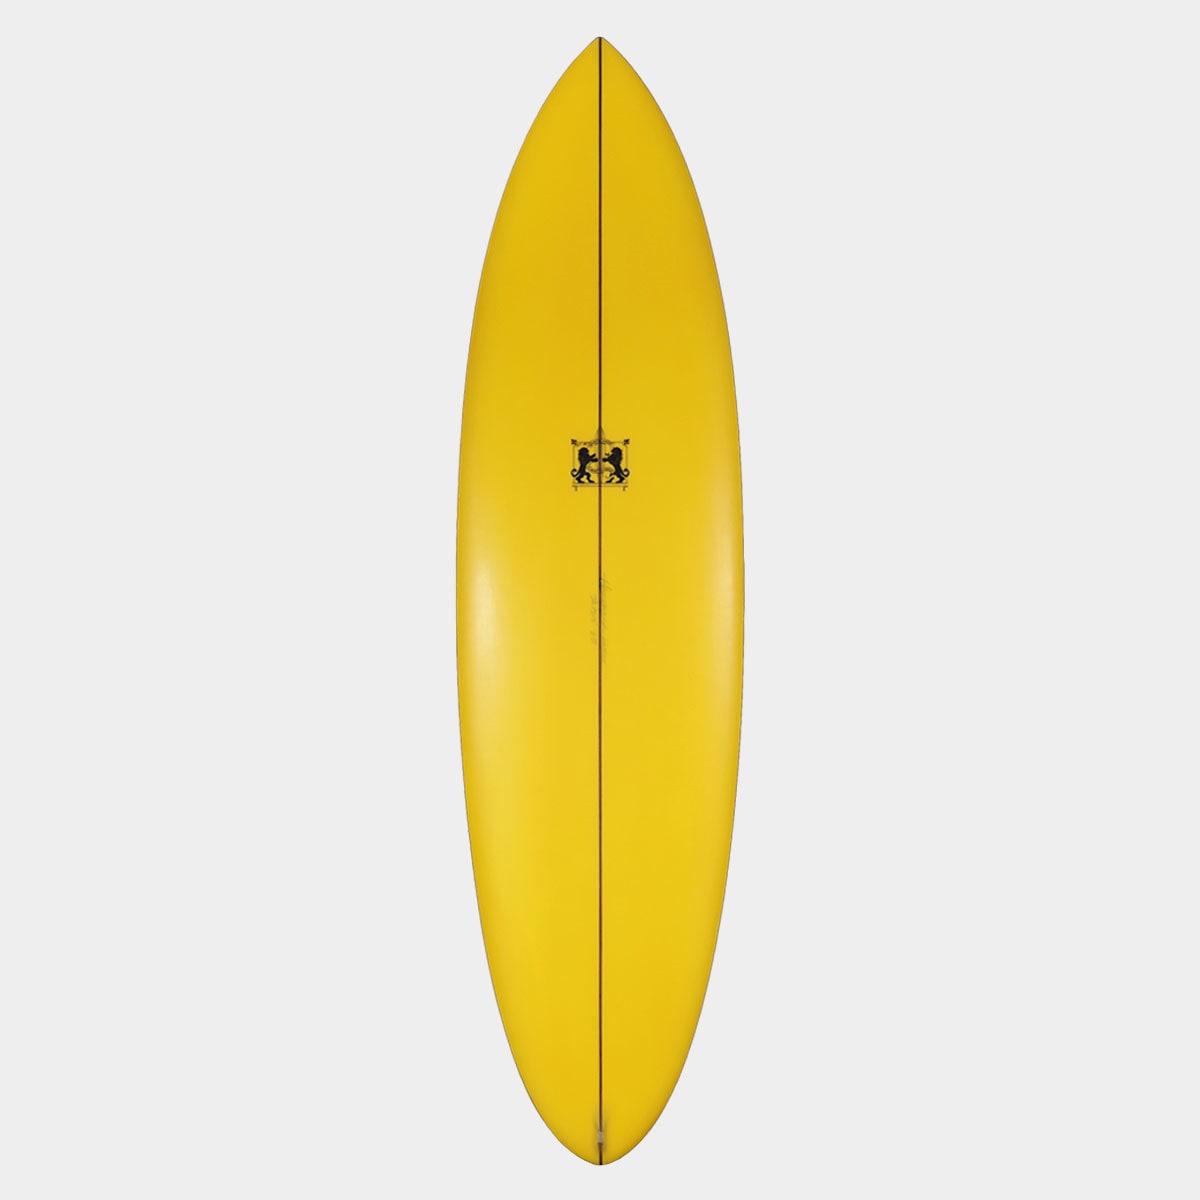 ラリーメイビル サーフボード ツインザー 6'10 サーフィン オンフィン クワッド surfboards LARRY MABILE TWINZER  6.10 QUAD【jk2305】-ジャックオーシャンスポーツ